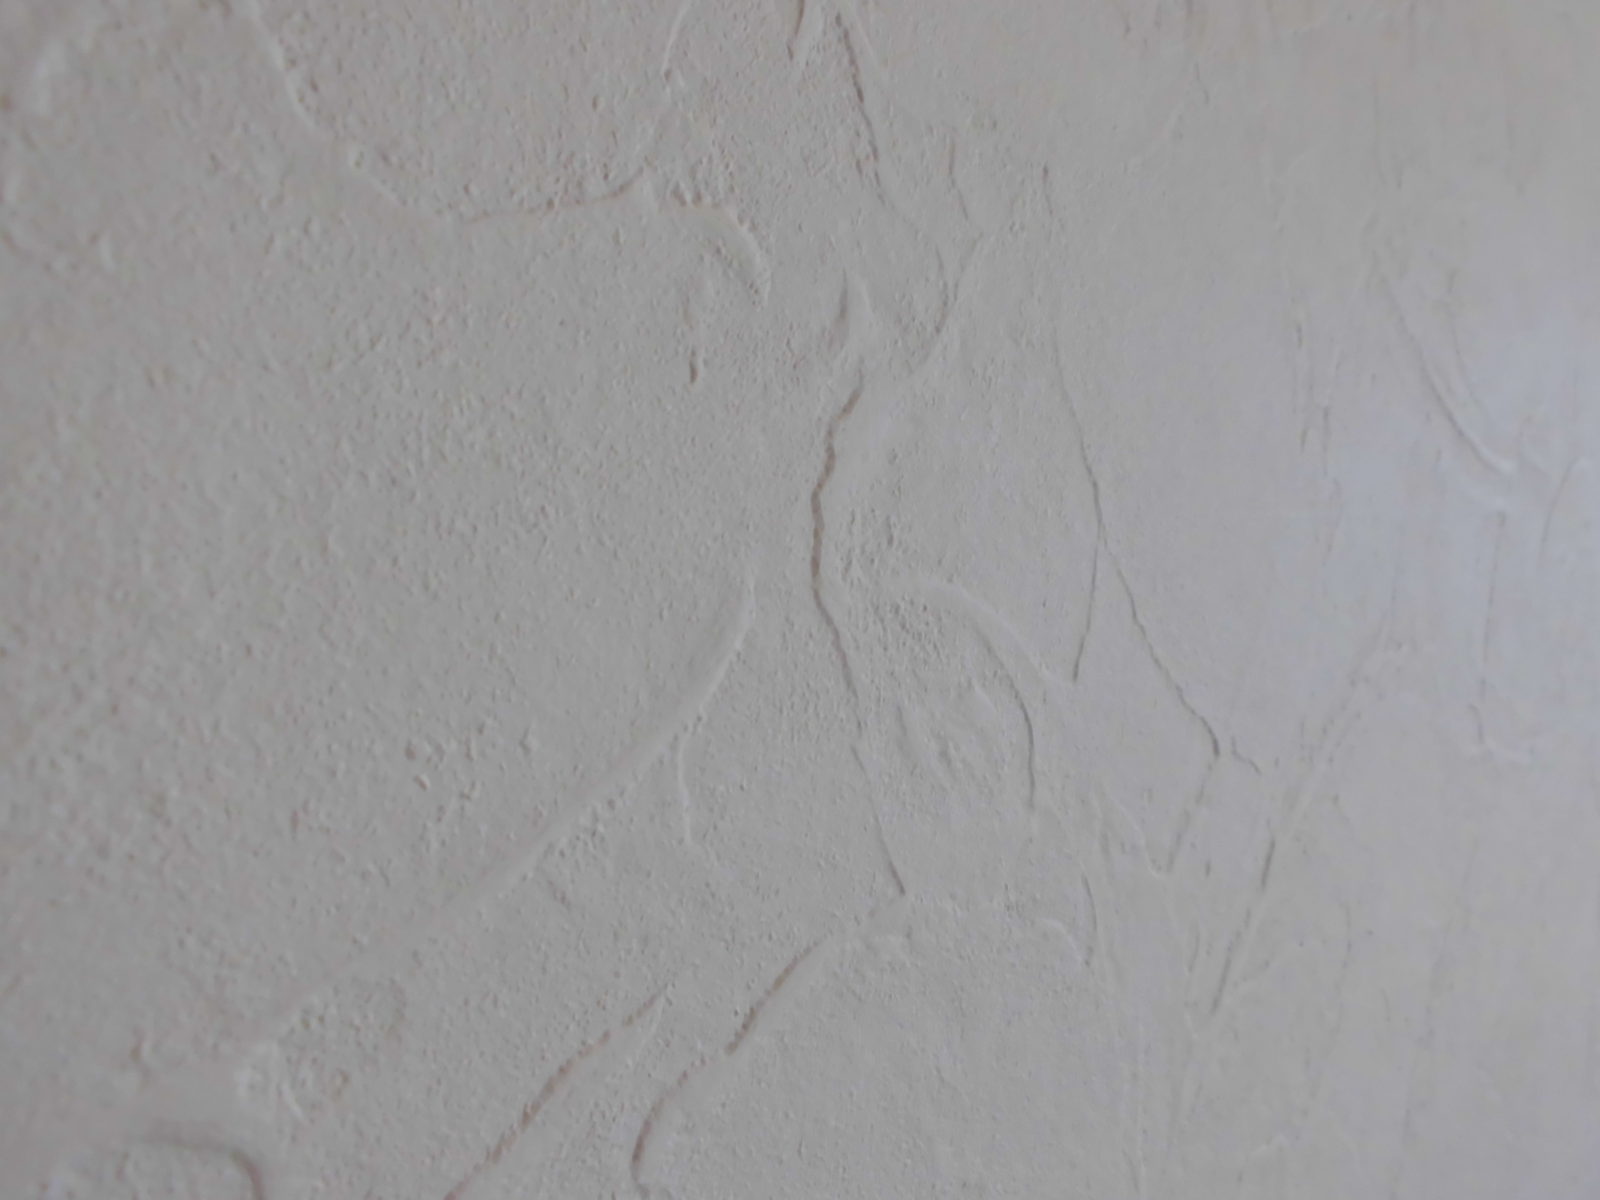 凹凸のある塗り壁のような質感の壁紙を施工いたしました。